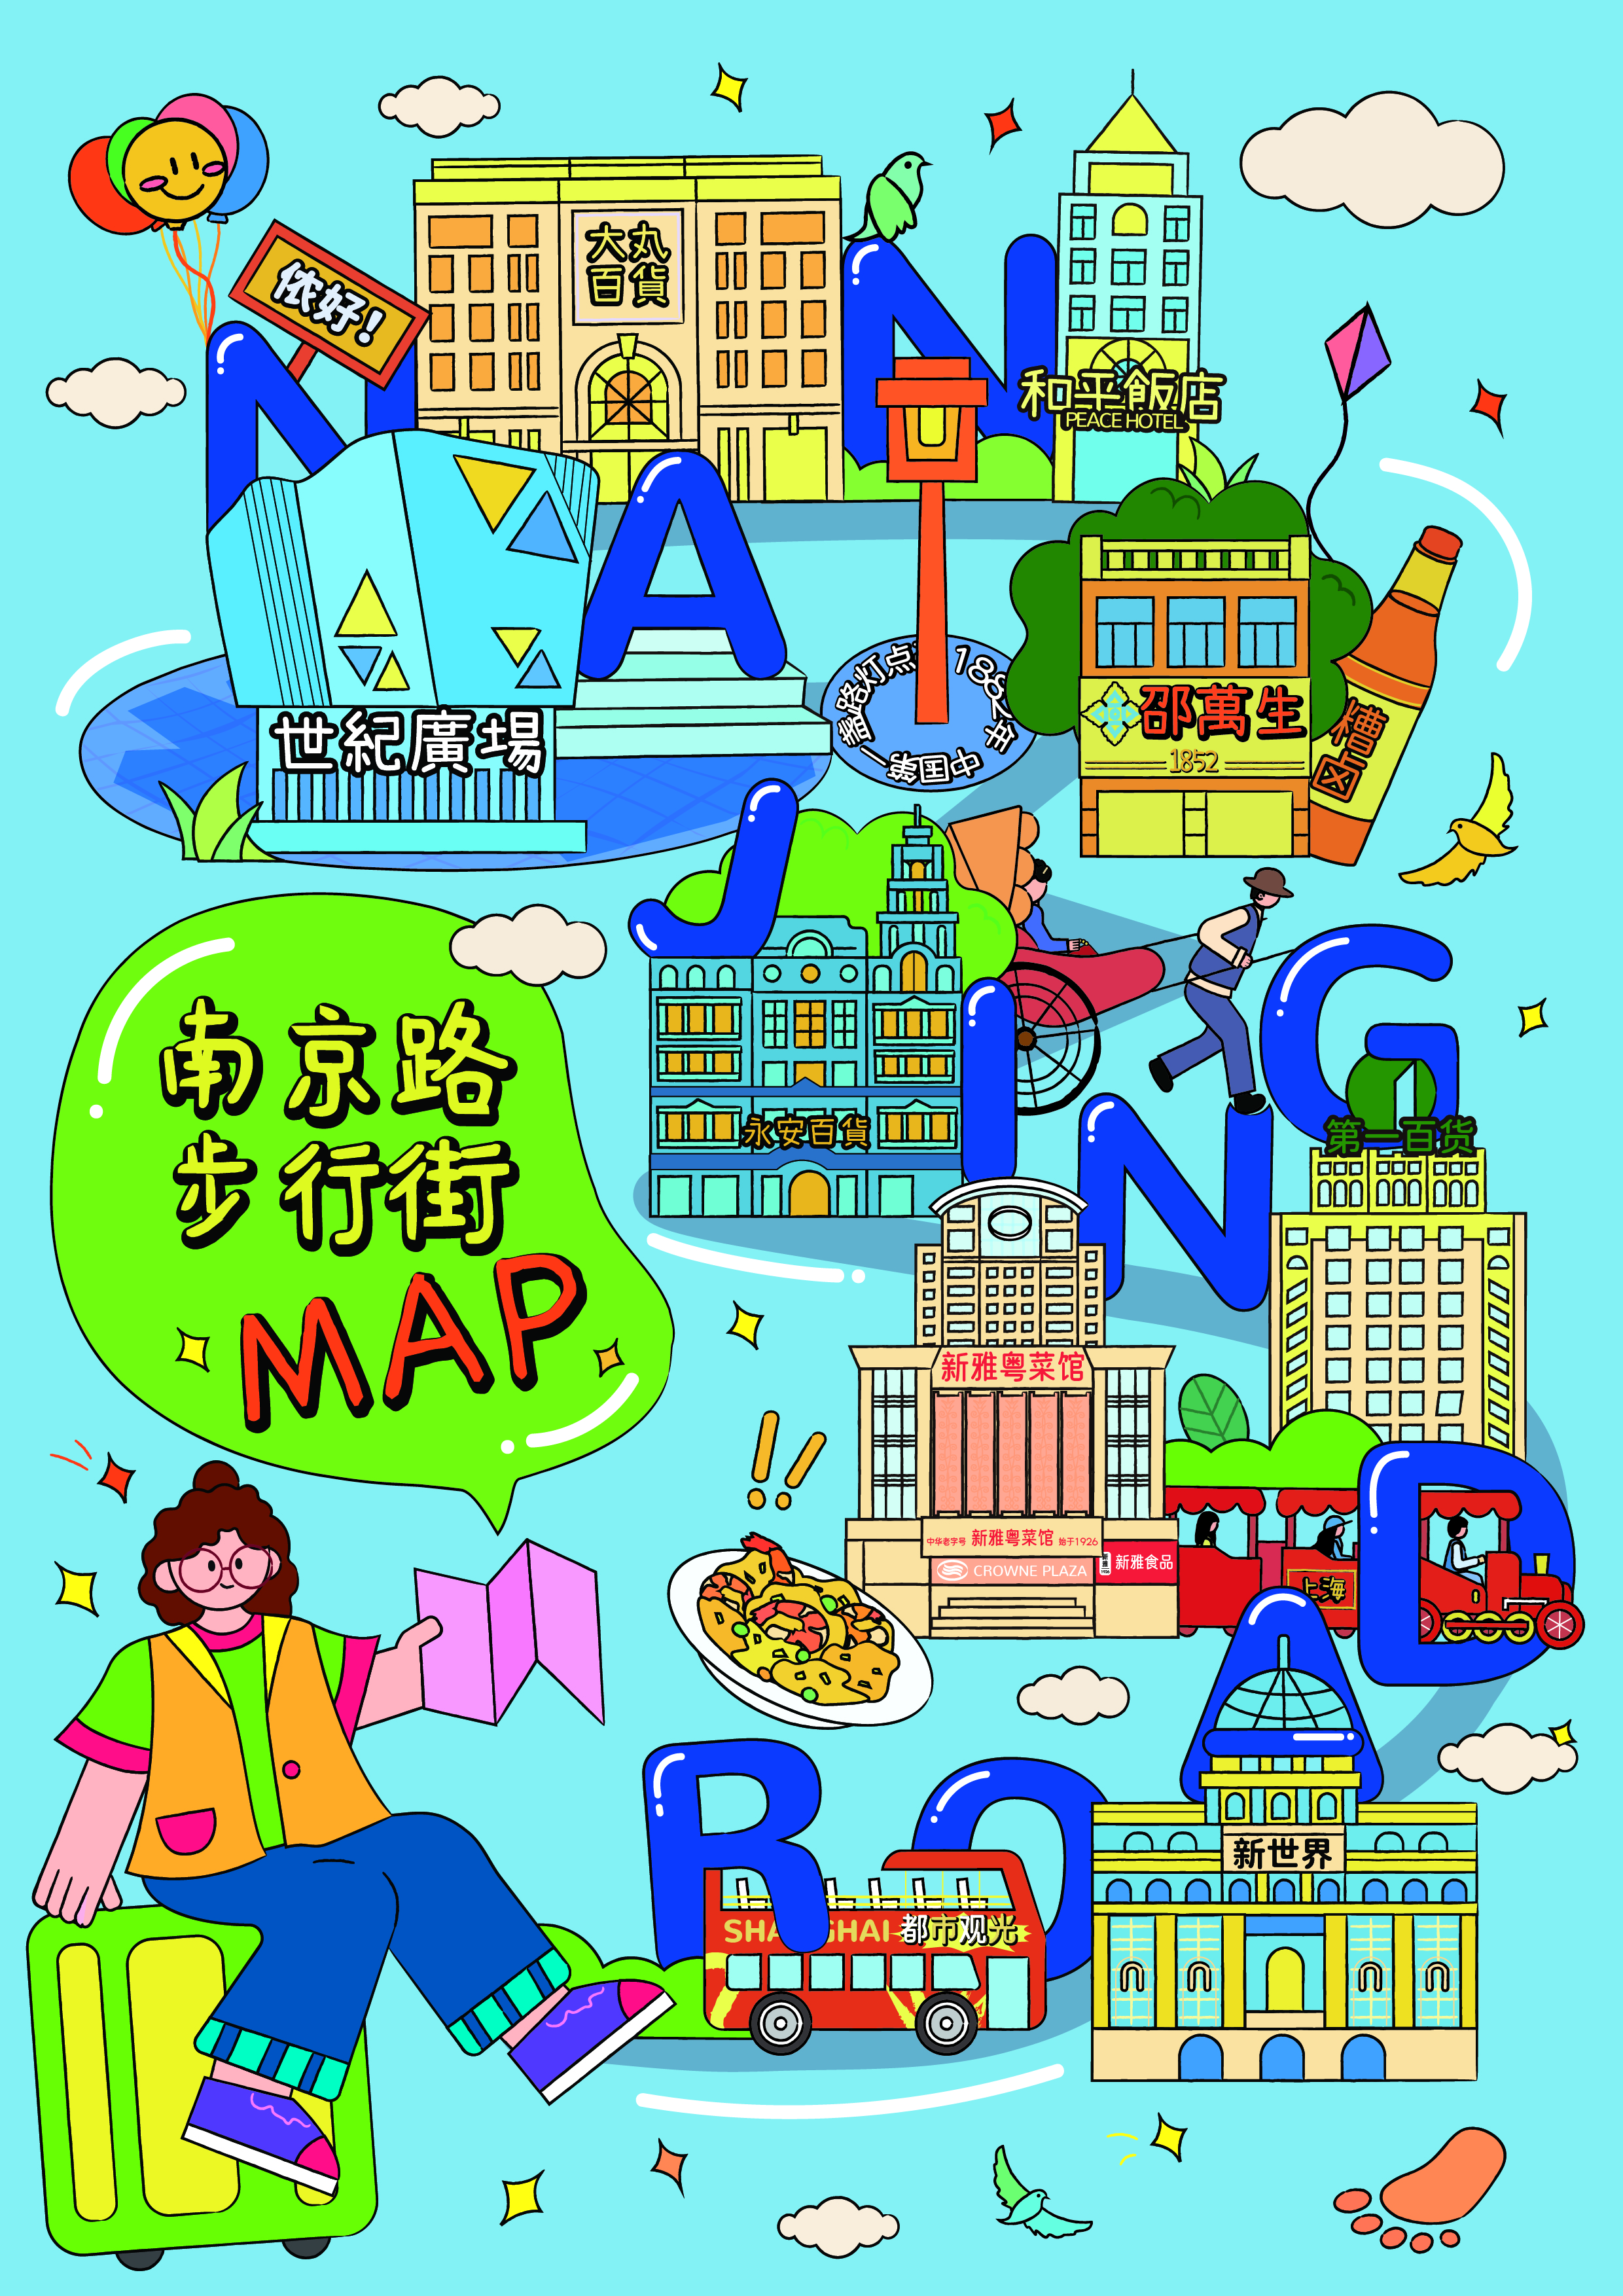 【南步街】文创产品 - 手绘地图